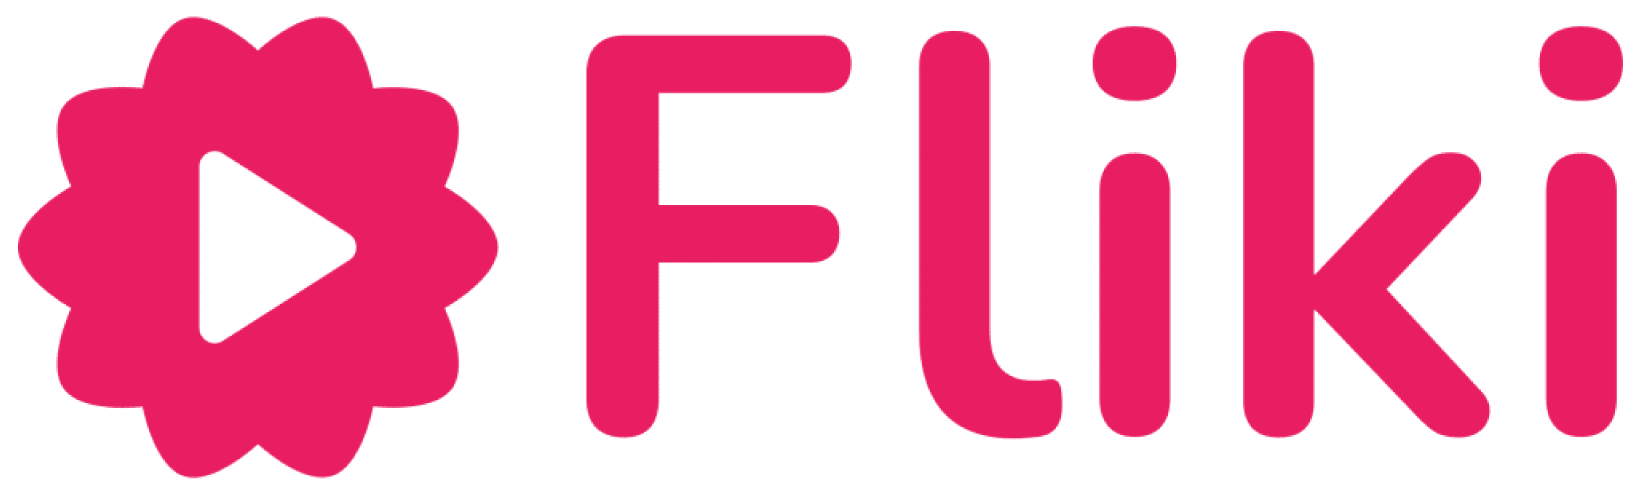 Fliki-logo-AI